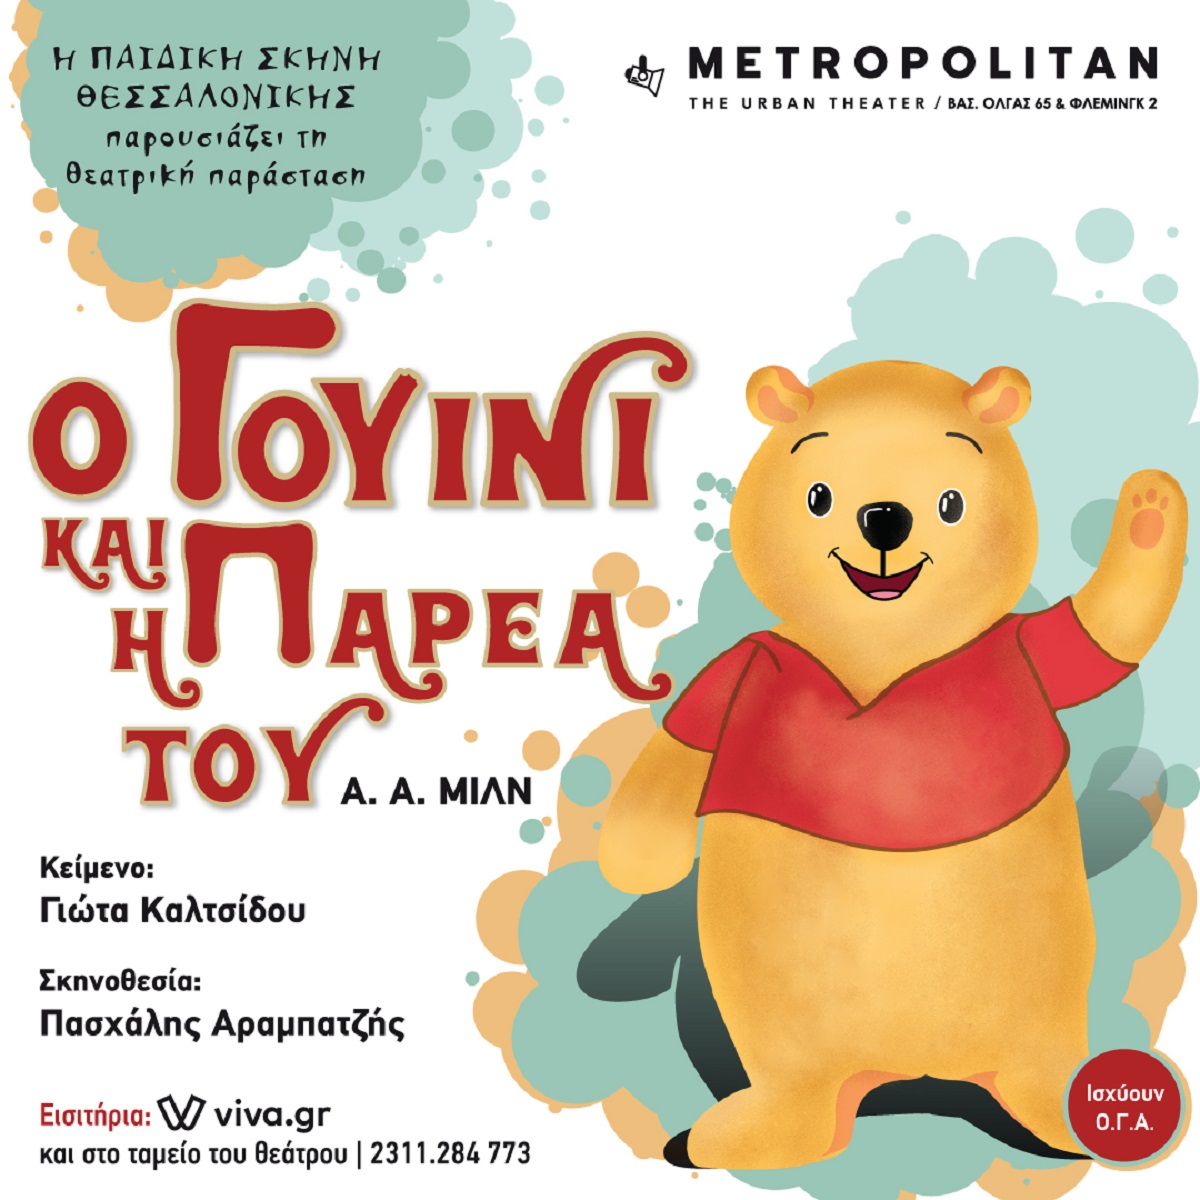 Από το Σάββατο 1 Οκτωβρίου «Ο Γουίνι και η παρέα του» στη Θεσσαλονίκη!